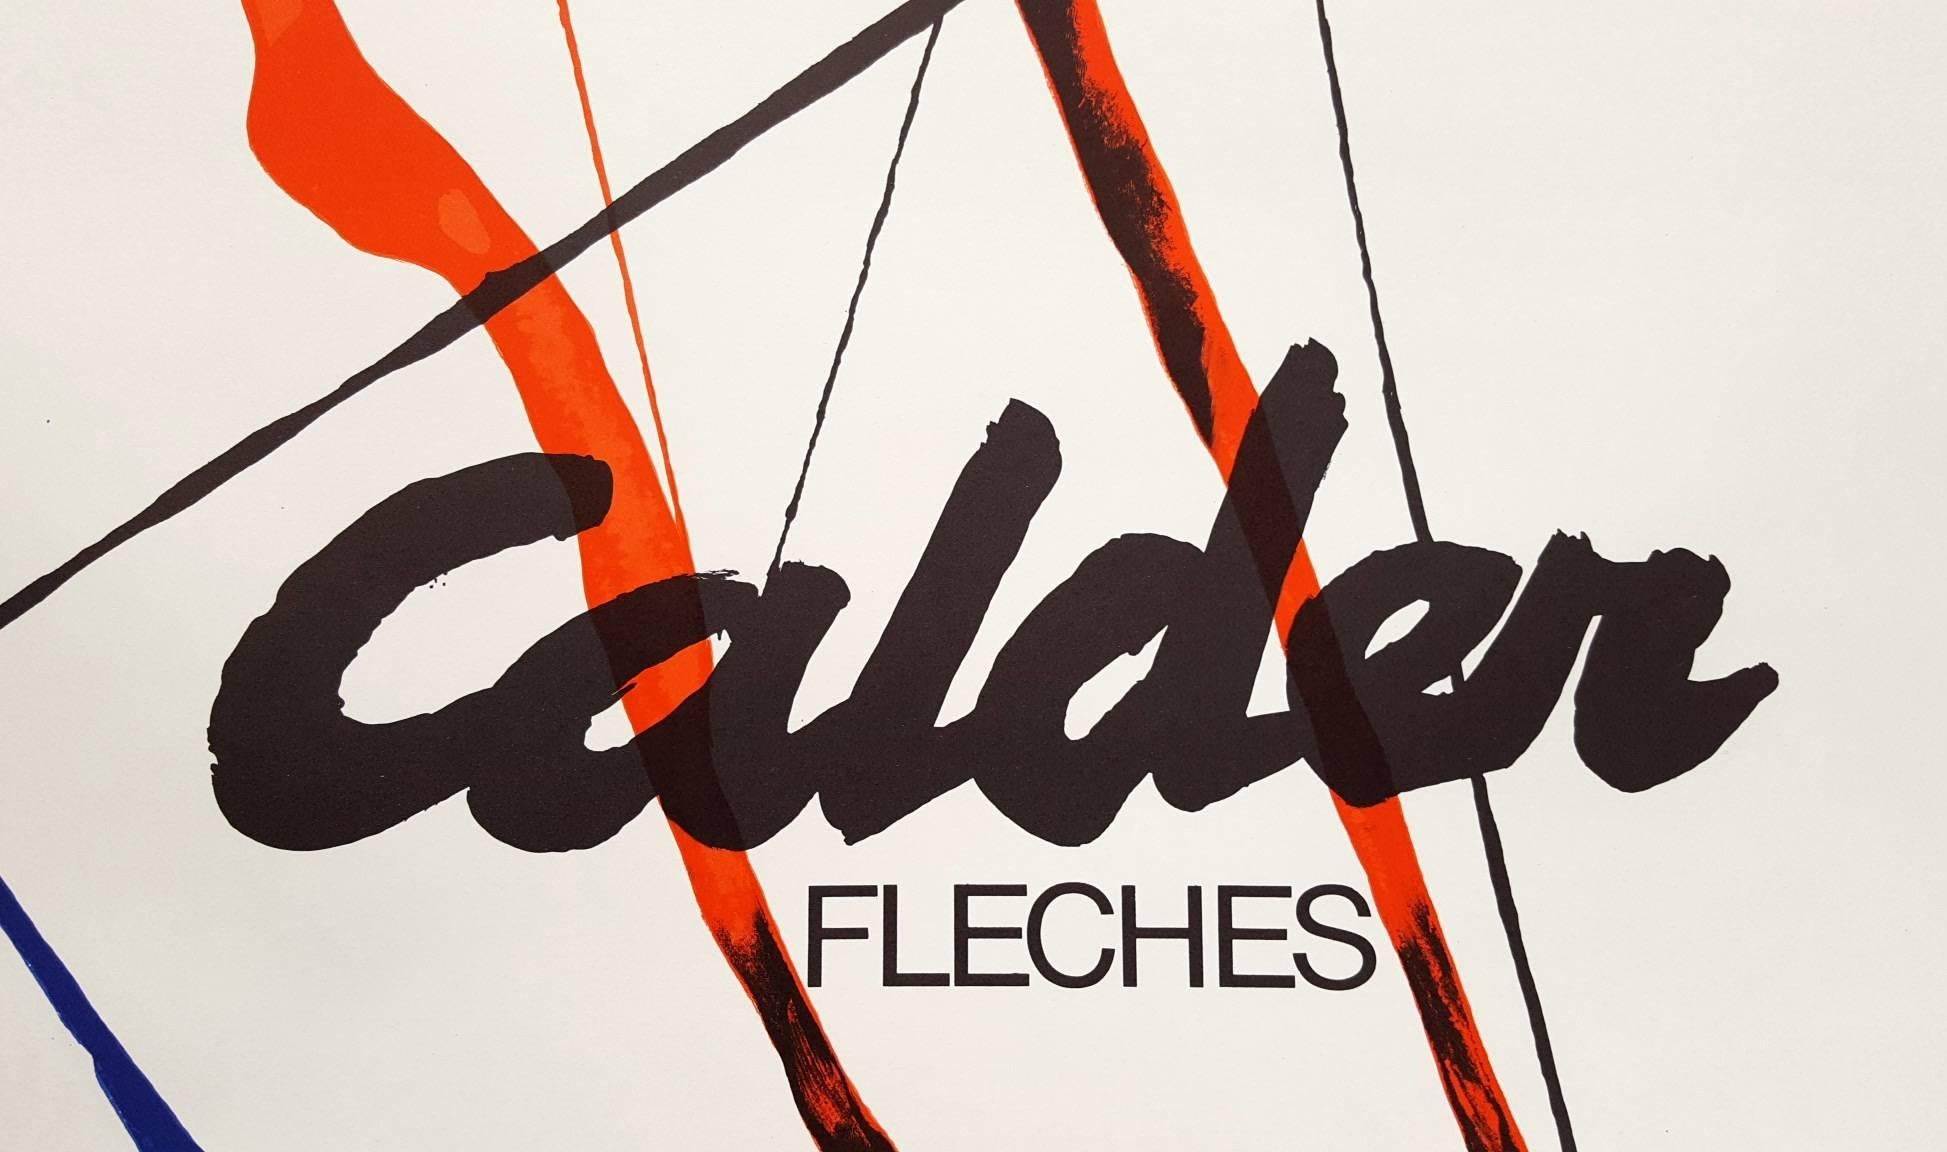 Fleches - Print by (after) Alexander Calder